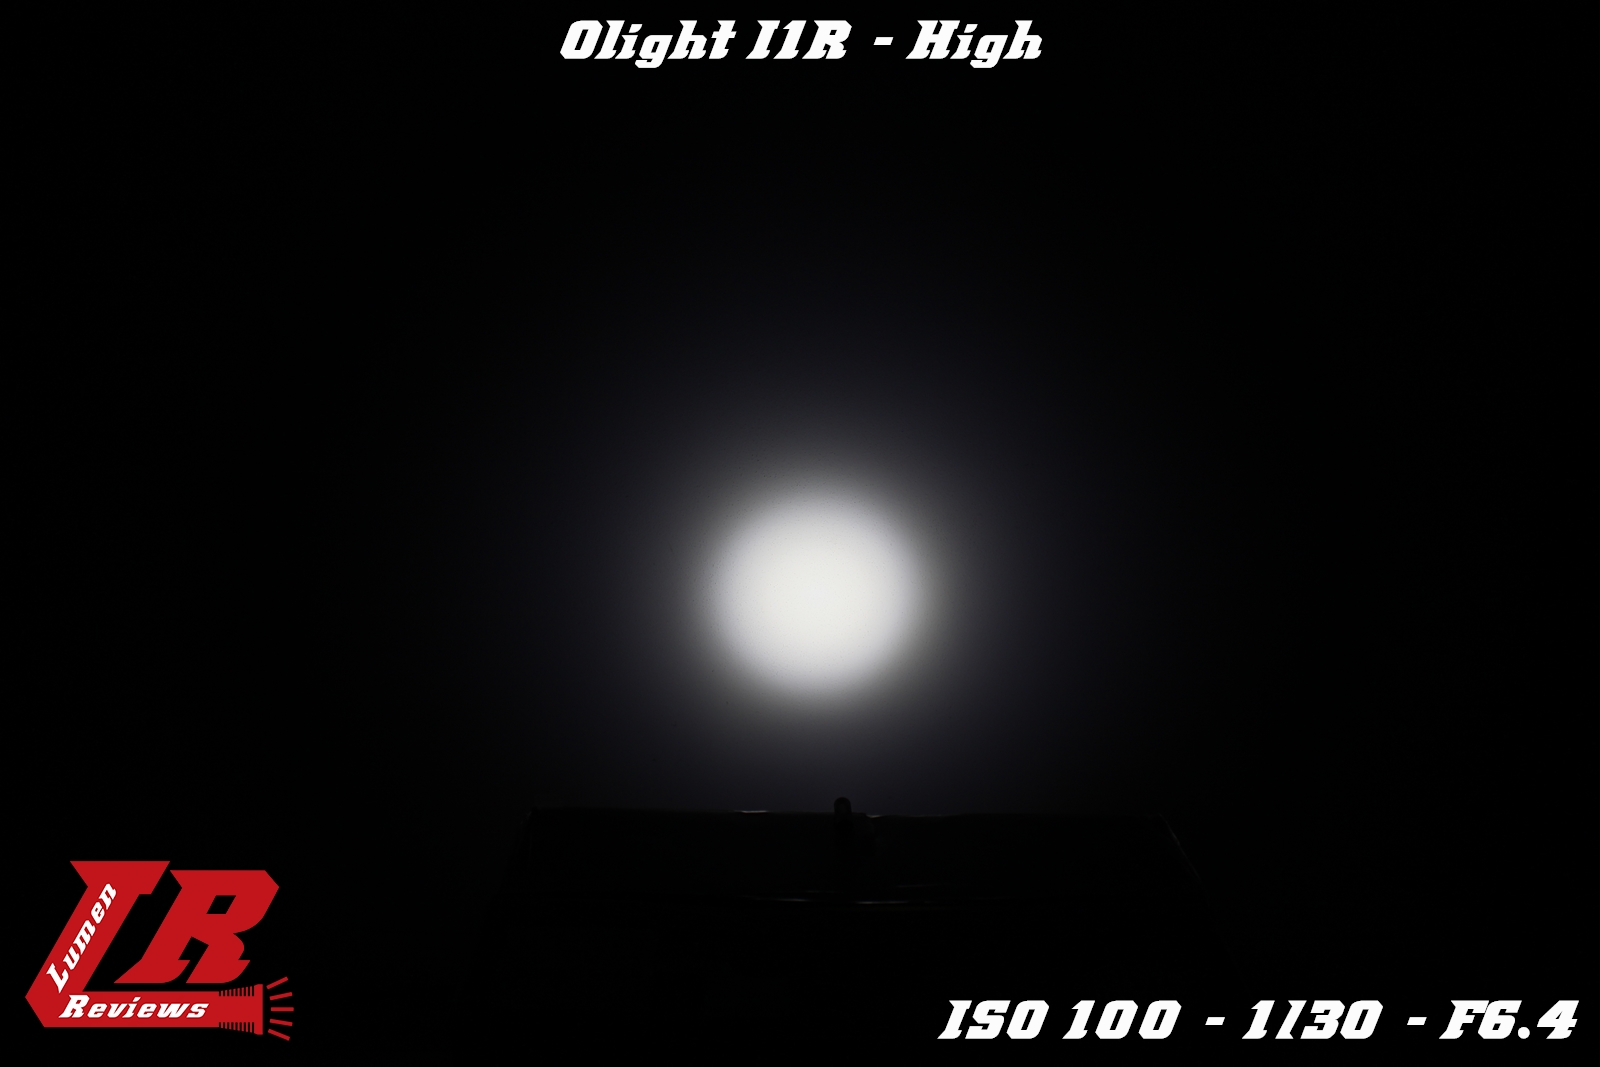 Olight_I1R_16.jpg